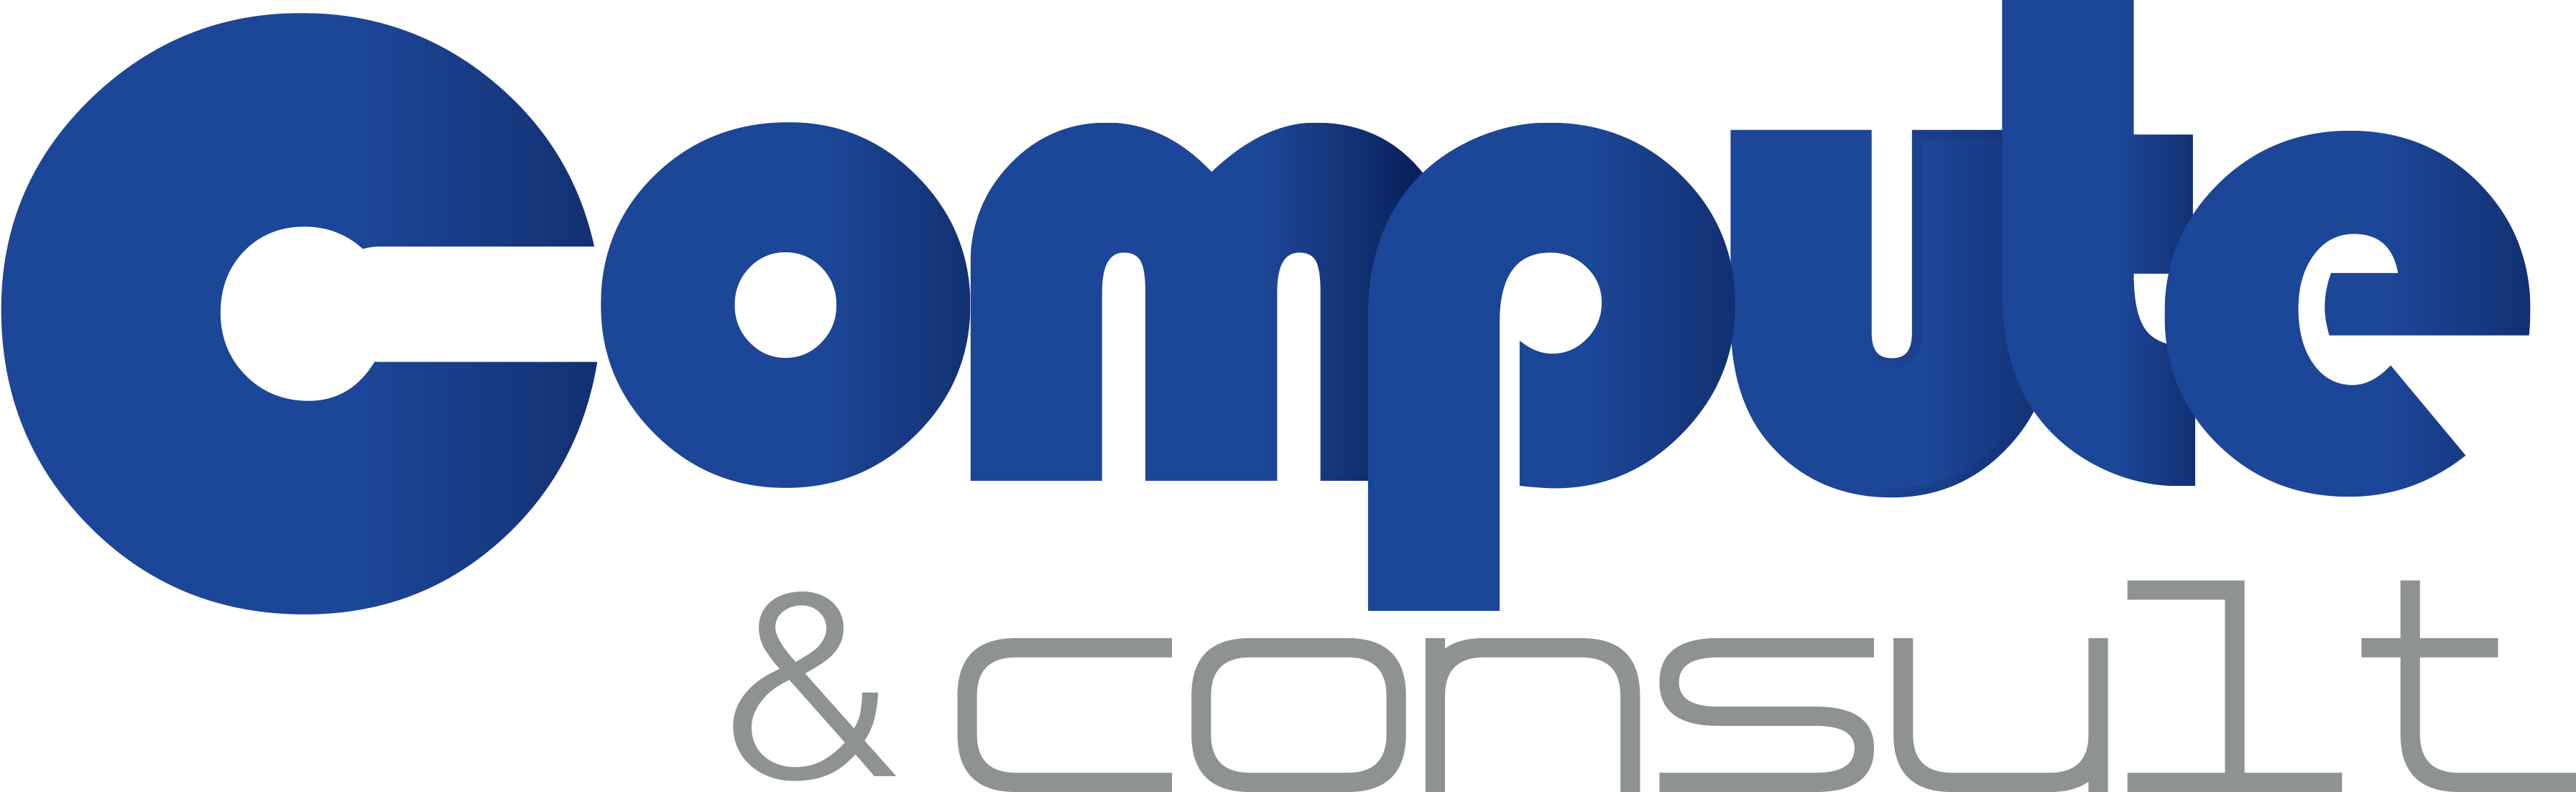 Compute & Consult